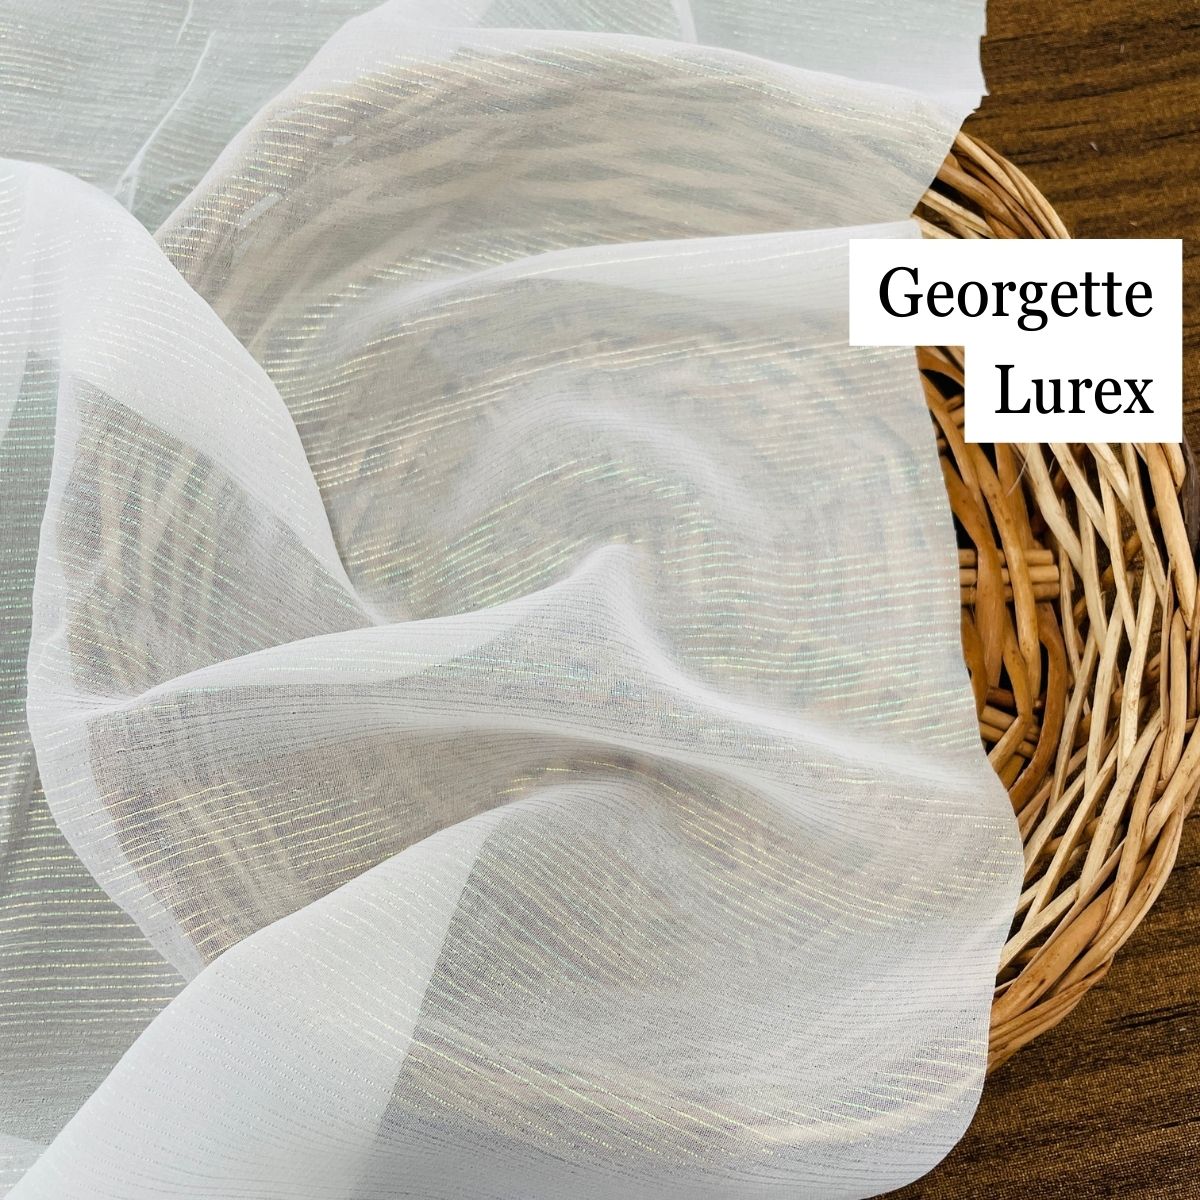 Georgette Lurex